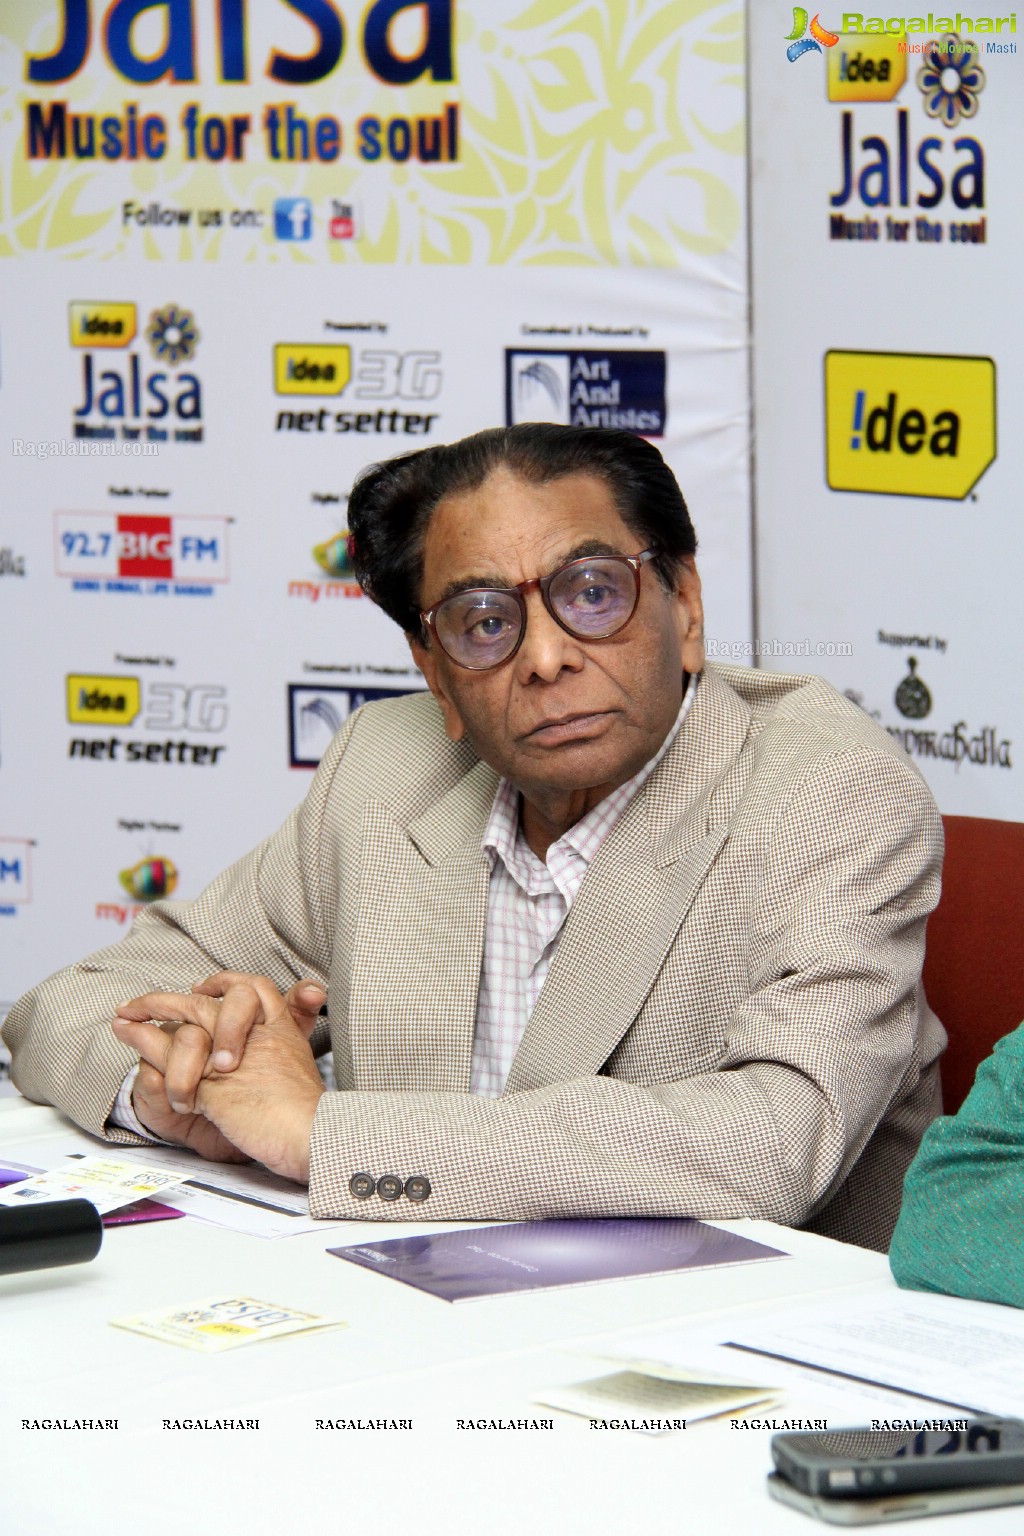  Idea Jalsa 2013 Press Meet